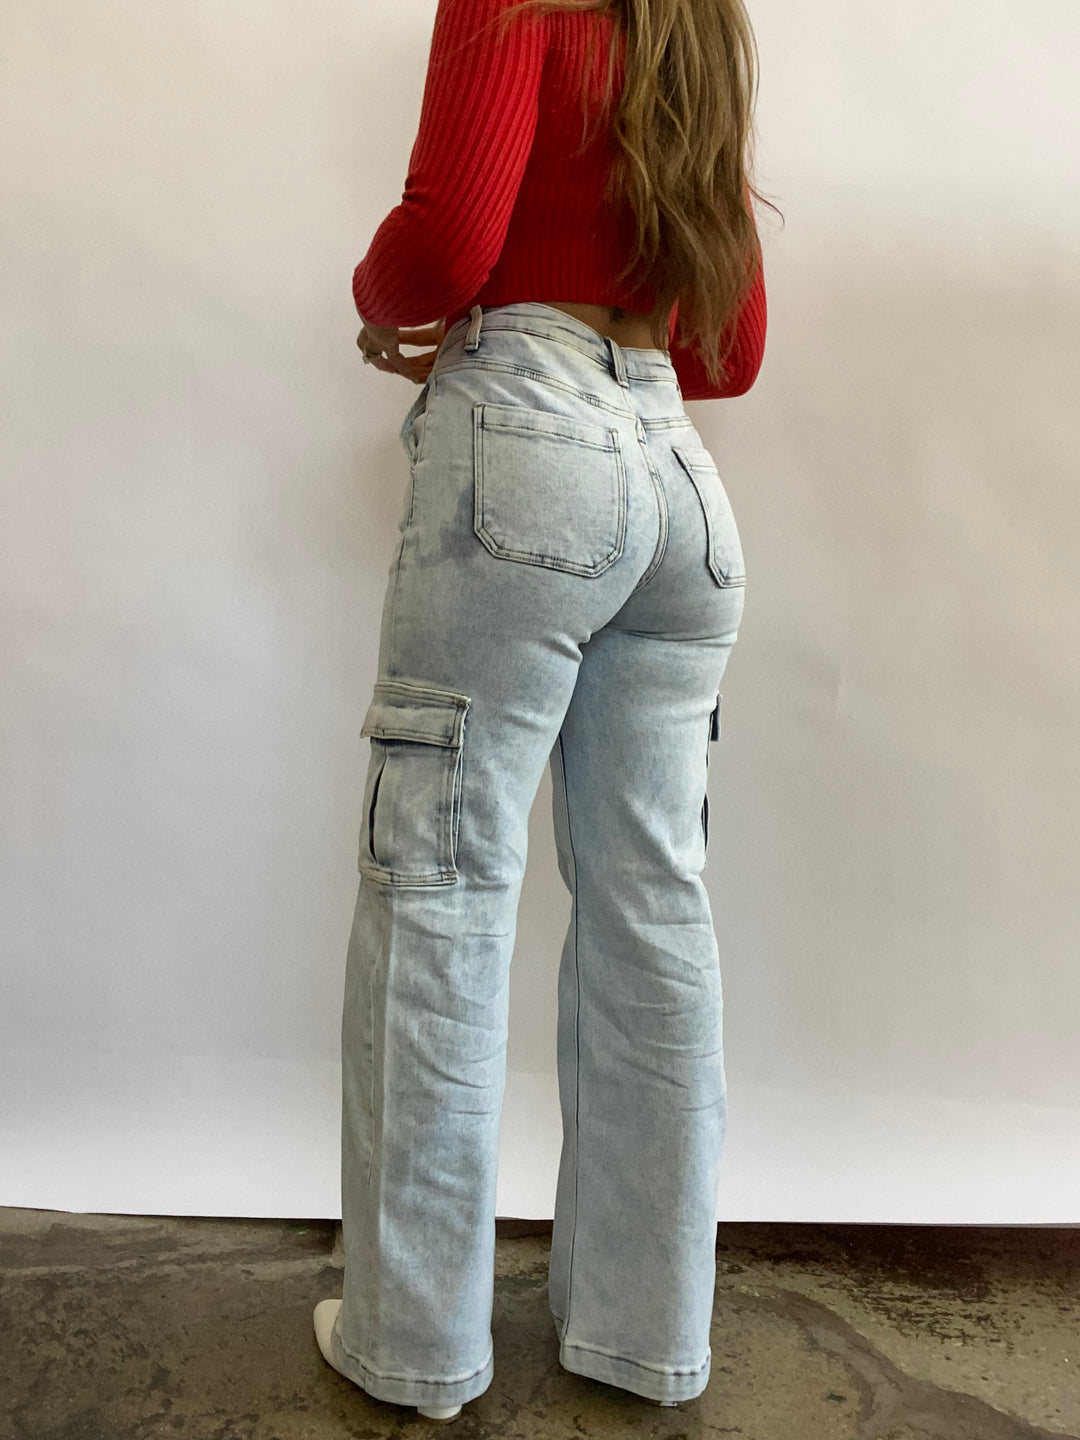 Tinsley Cargo Risen Jeans Short Inseam- Light Wash